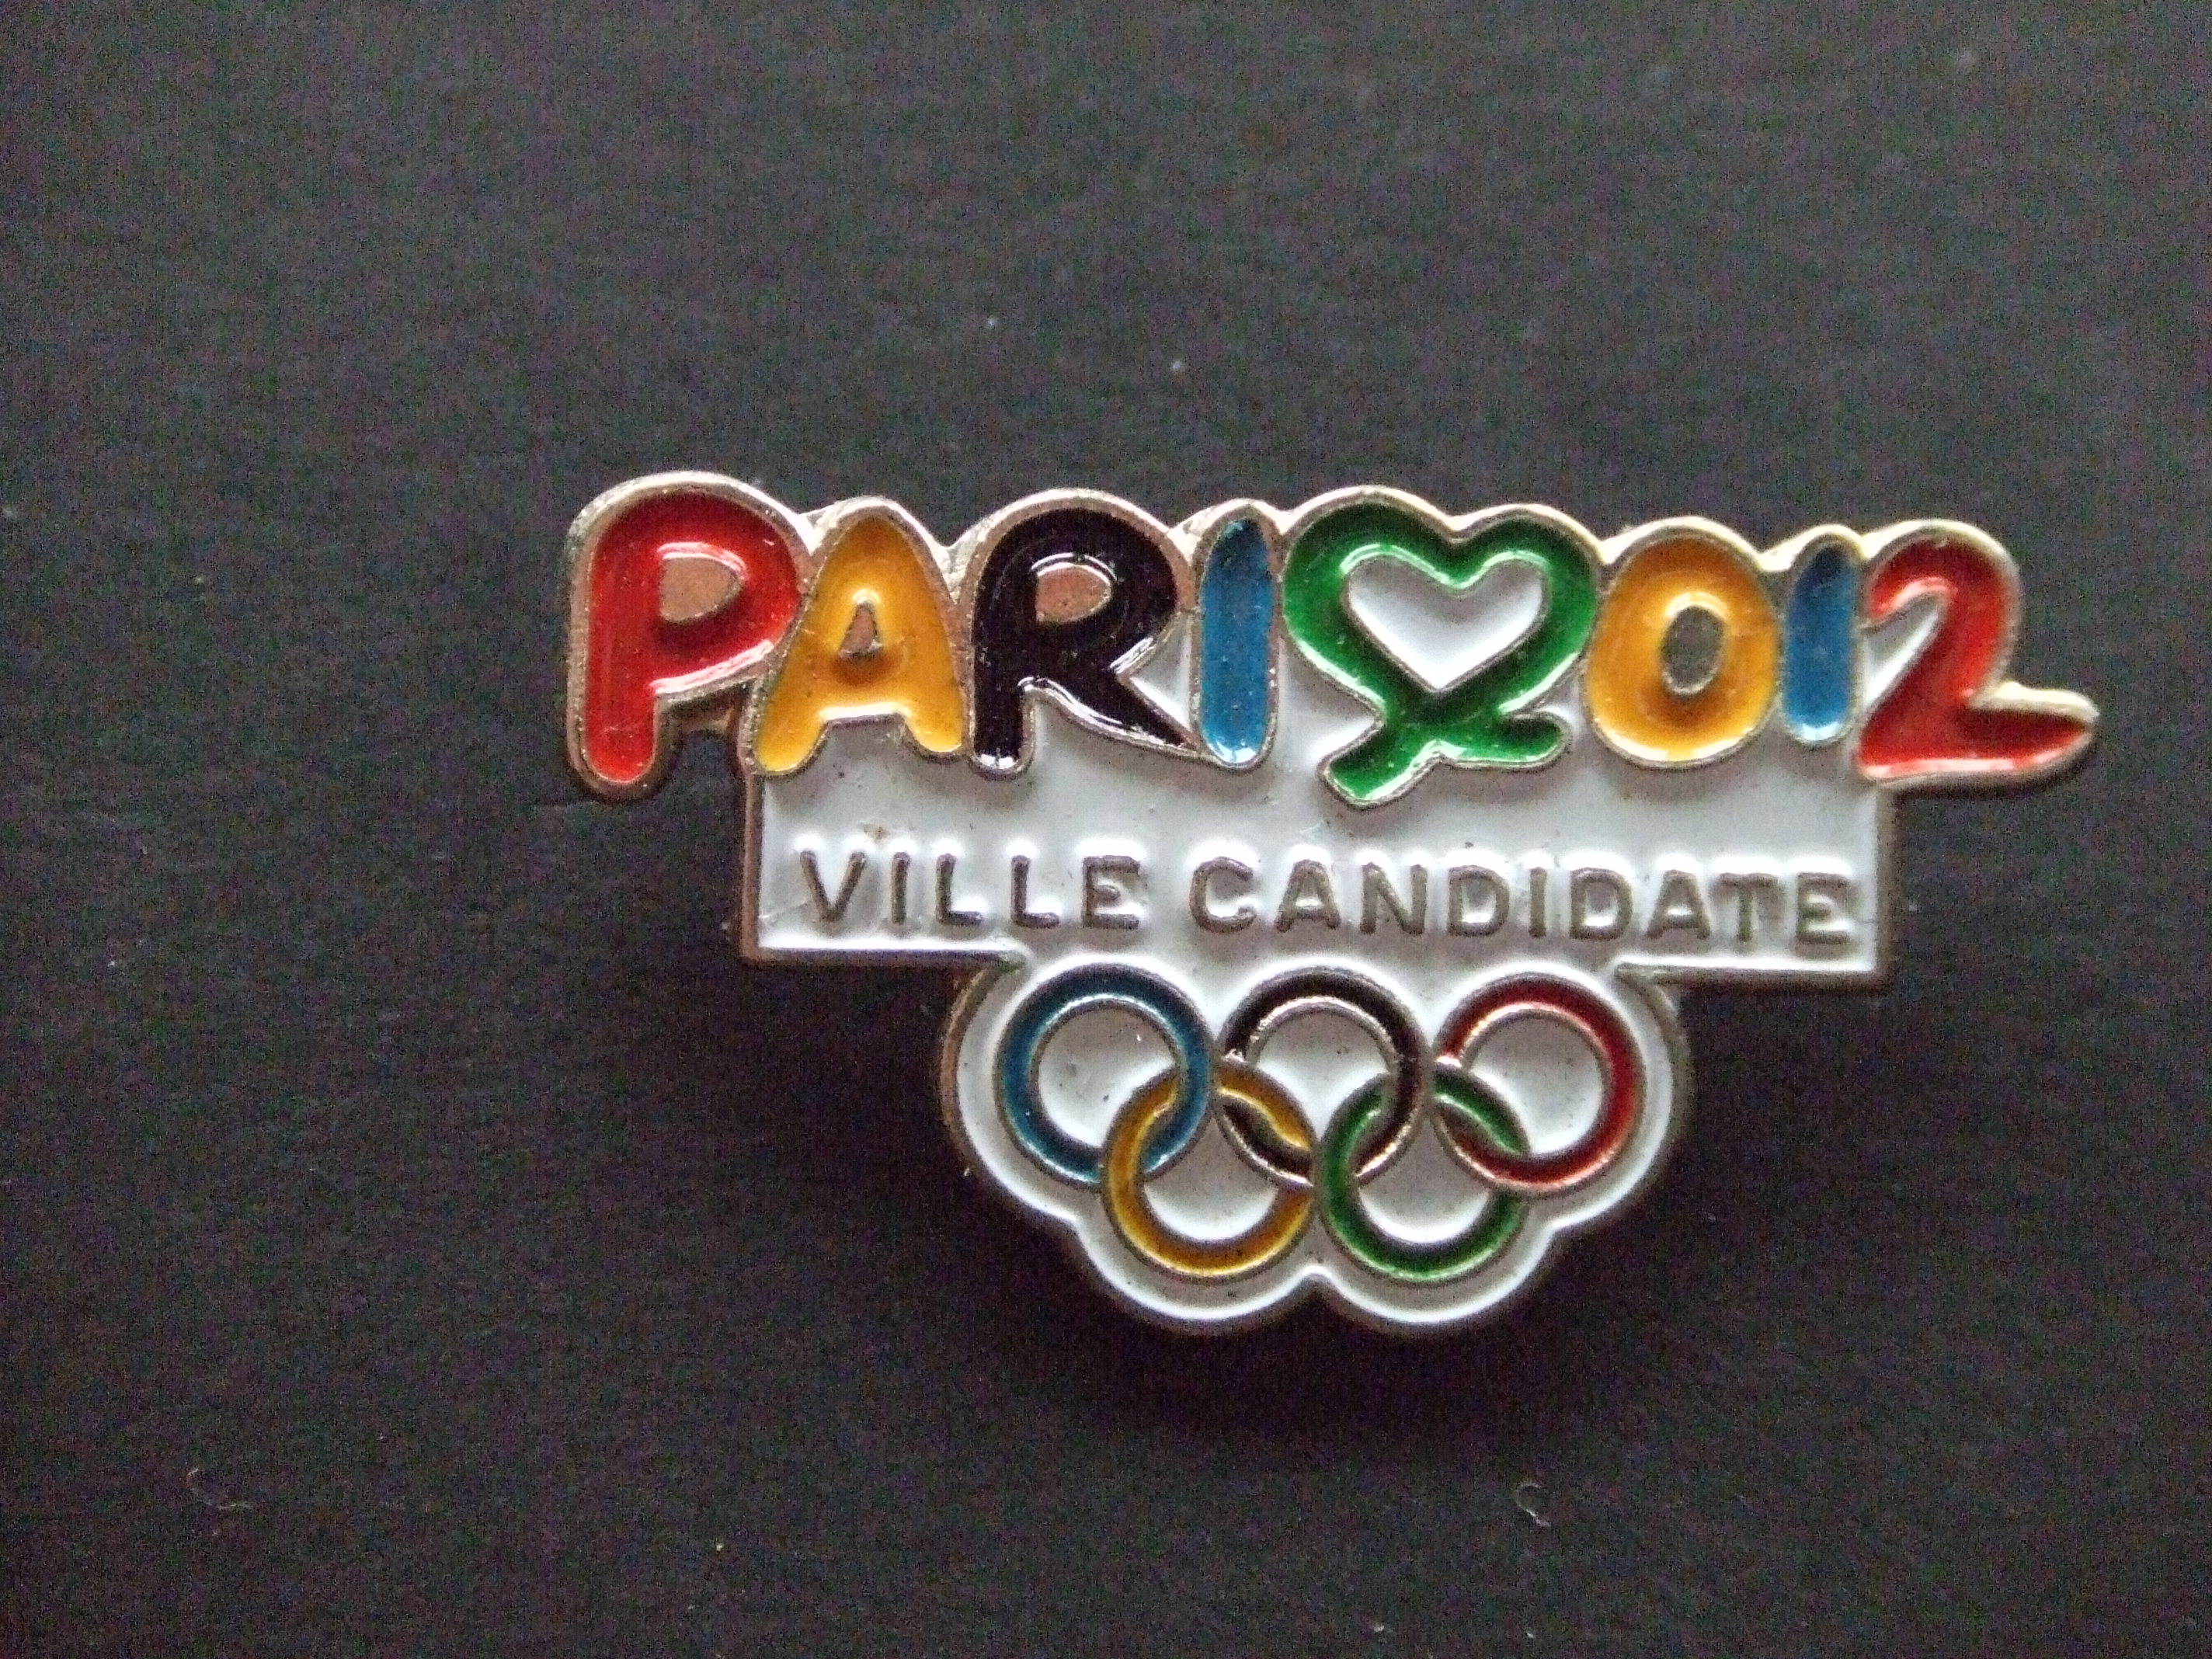 Parijs kandidaat Olympische Spelen 2012 Londen